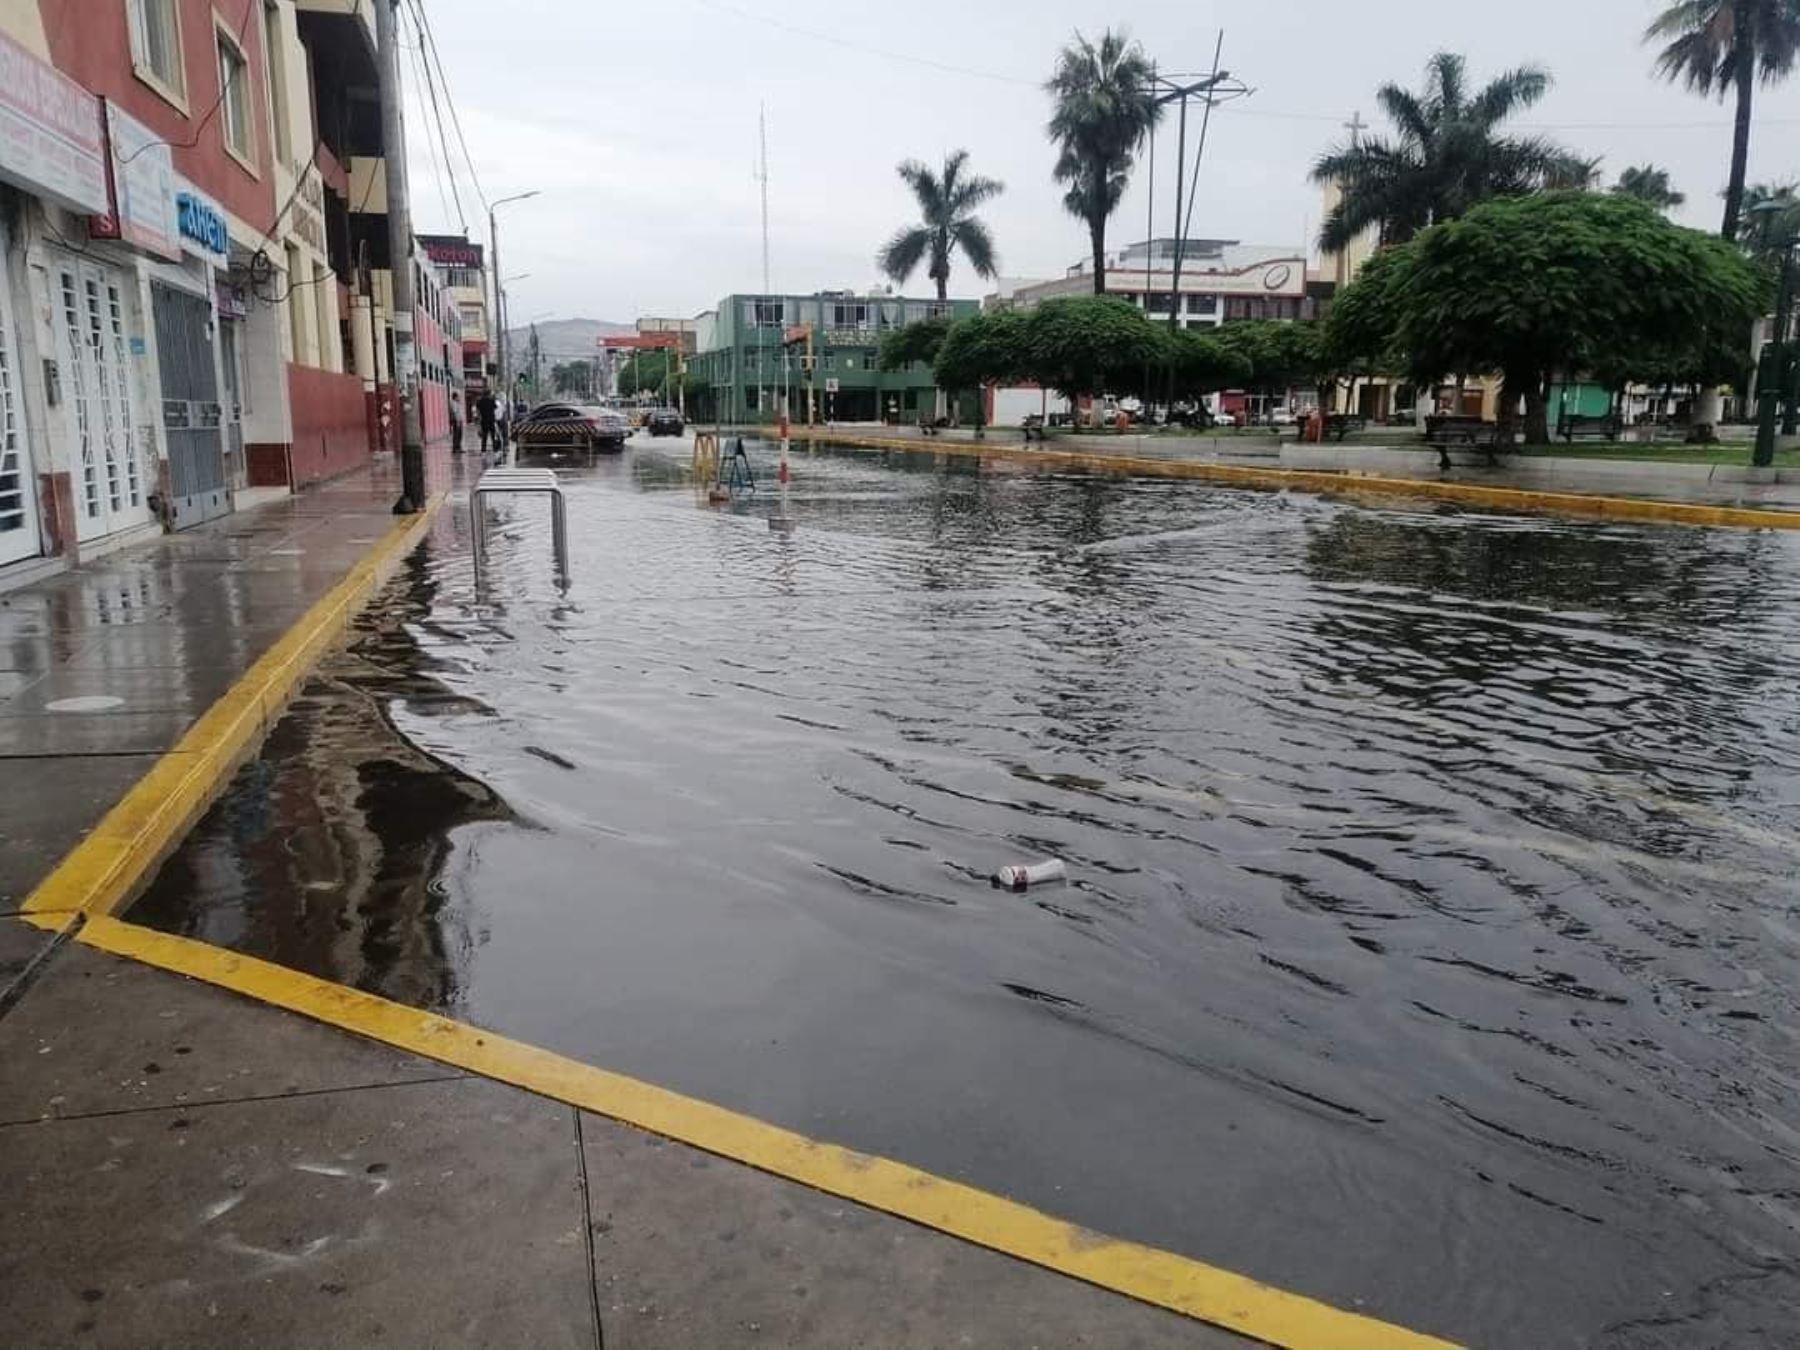 Casas inundadas y calles anegadas dejaron más de siete horas de lluvias registradas en la ciudad de Chimbote, Áncash. Foto: ANDINA/difusión.